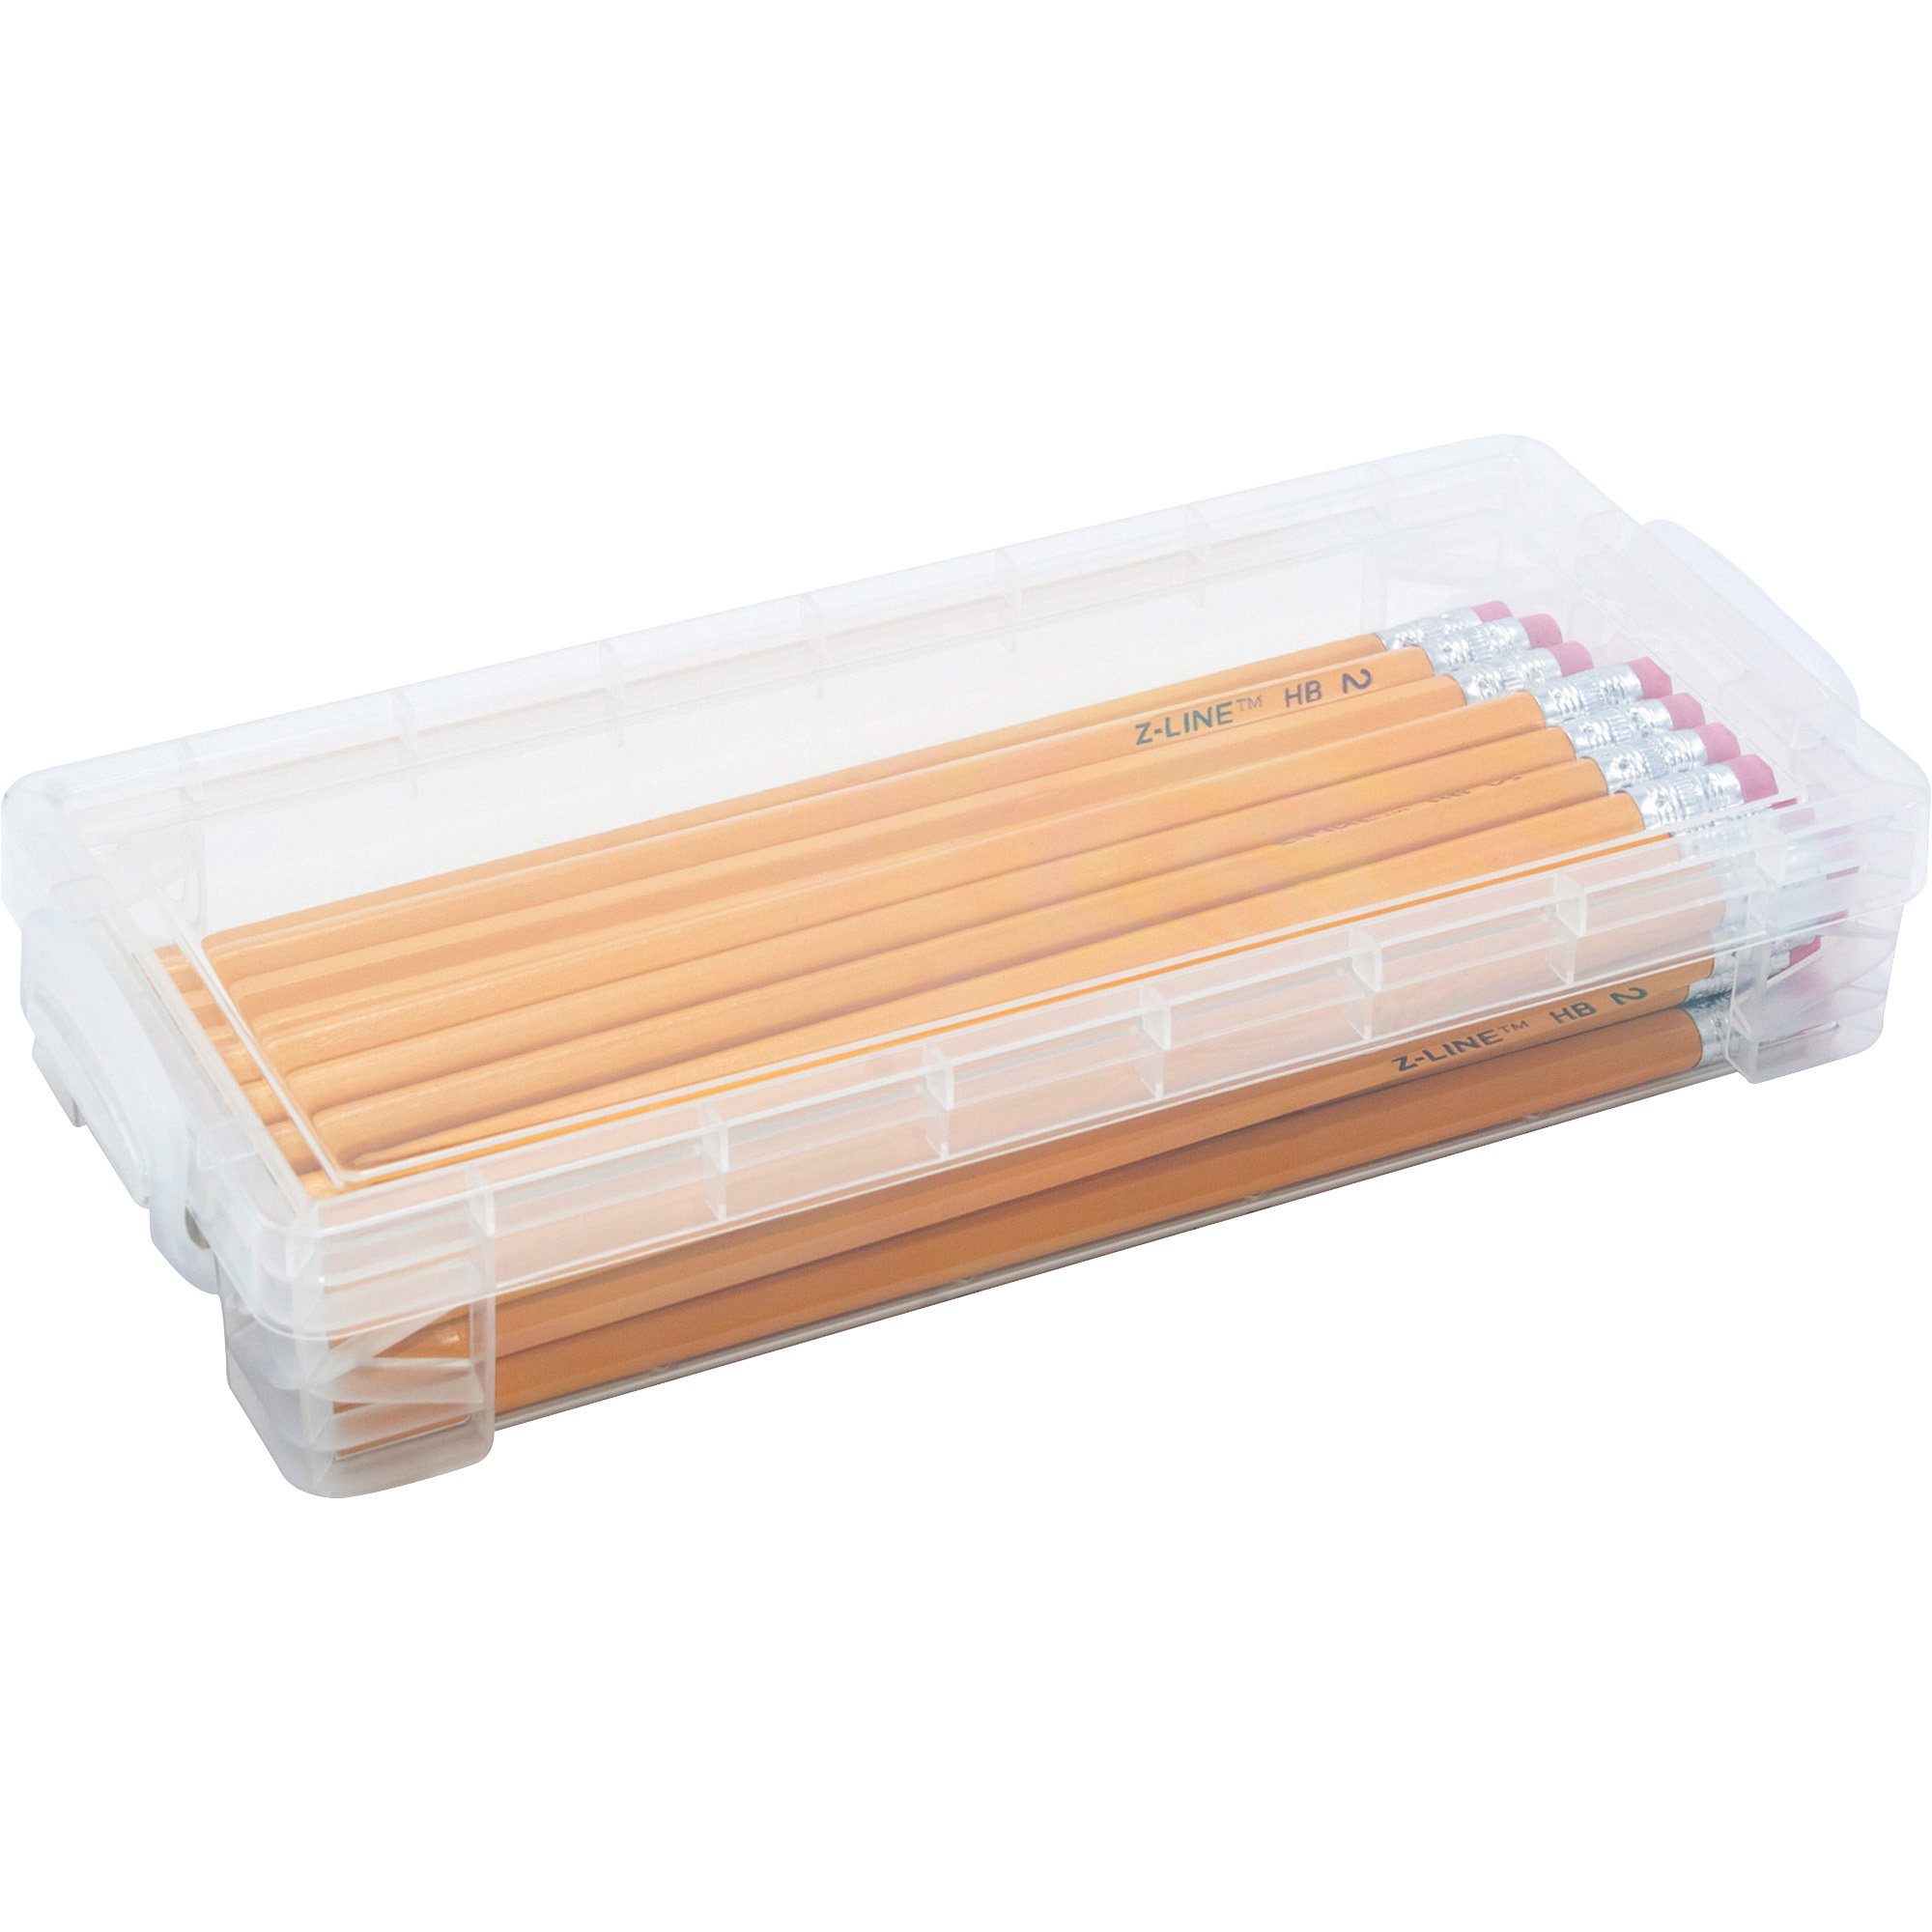 Advantus Gem Pencil Storage Box, 2 1/2 x 8 1/2 x 5 1/2, Clear